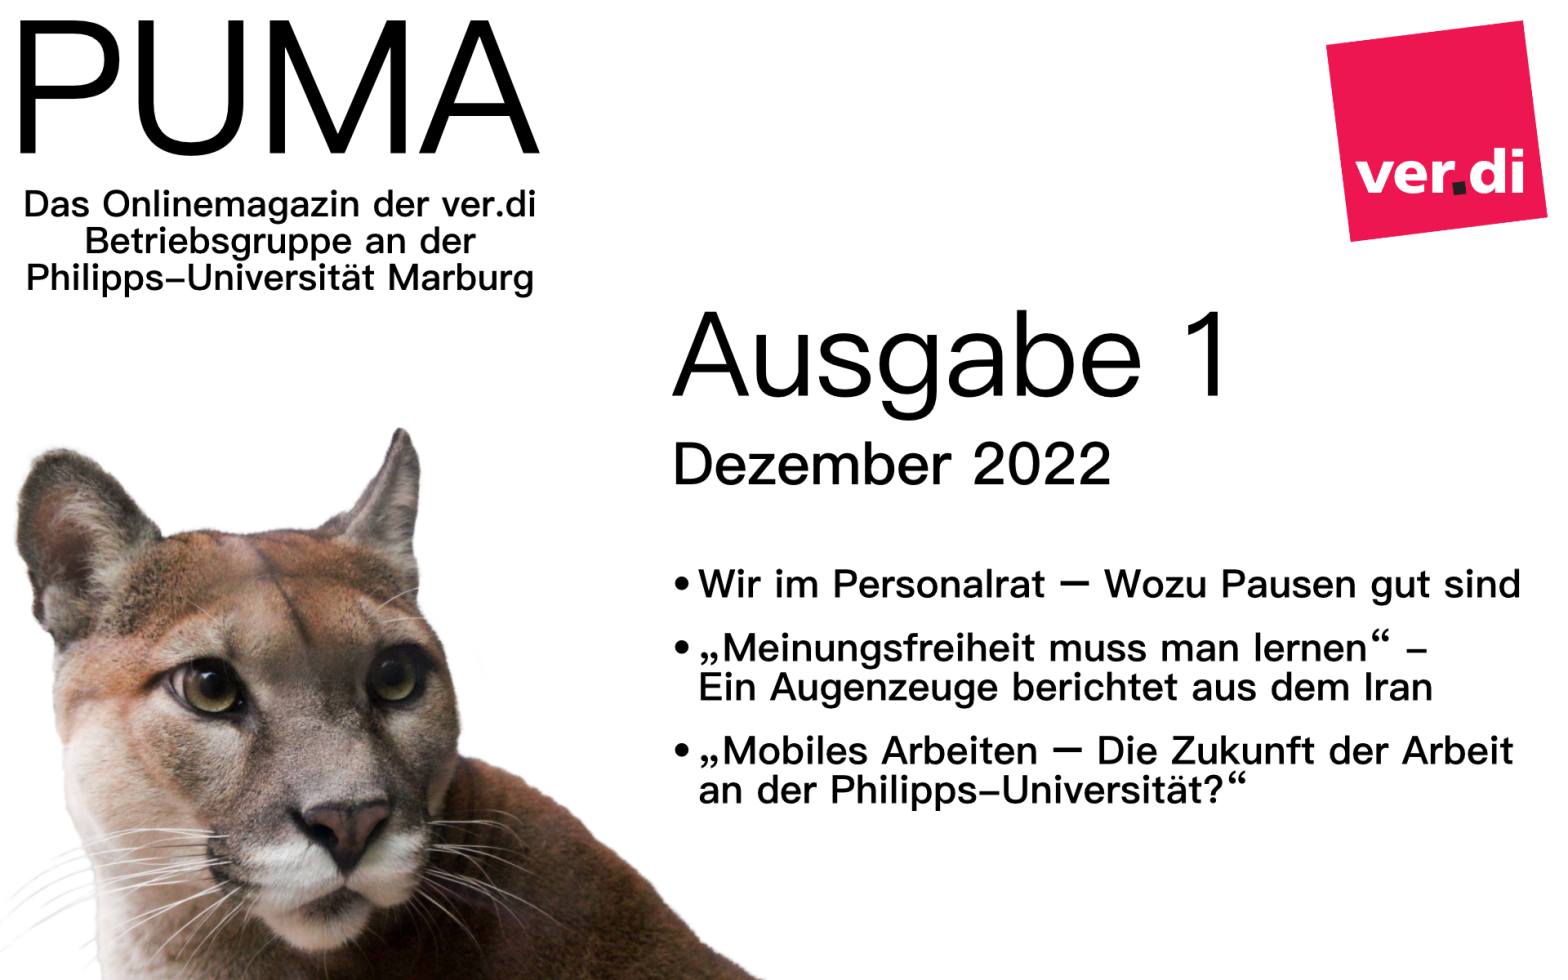 Das Cover der Ausgabe eins von PUMA, erschienen im Dezember 2022